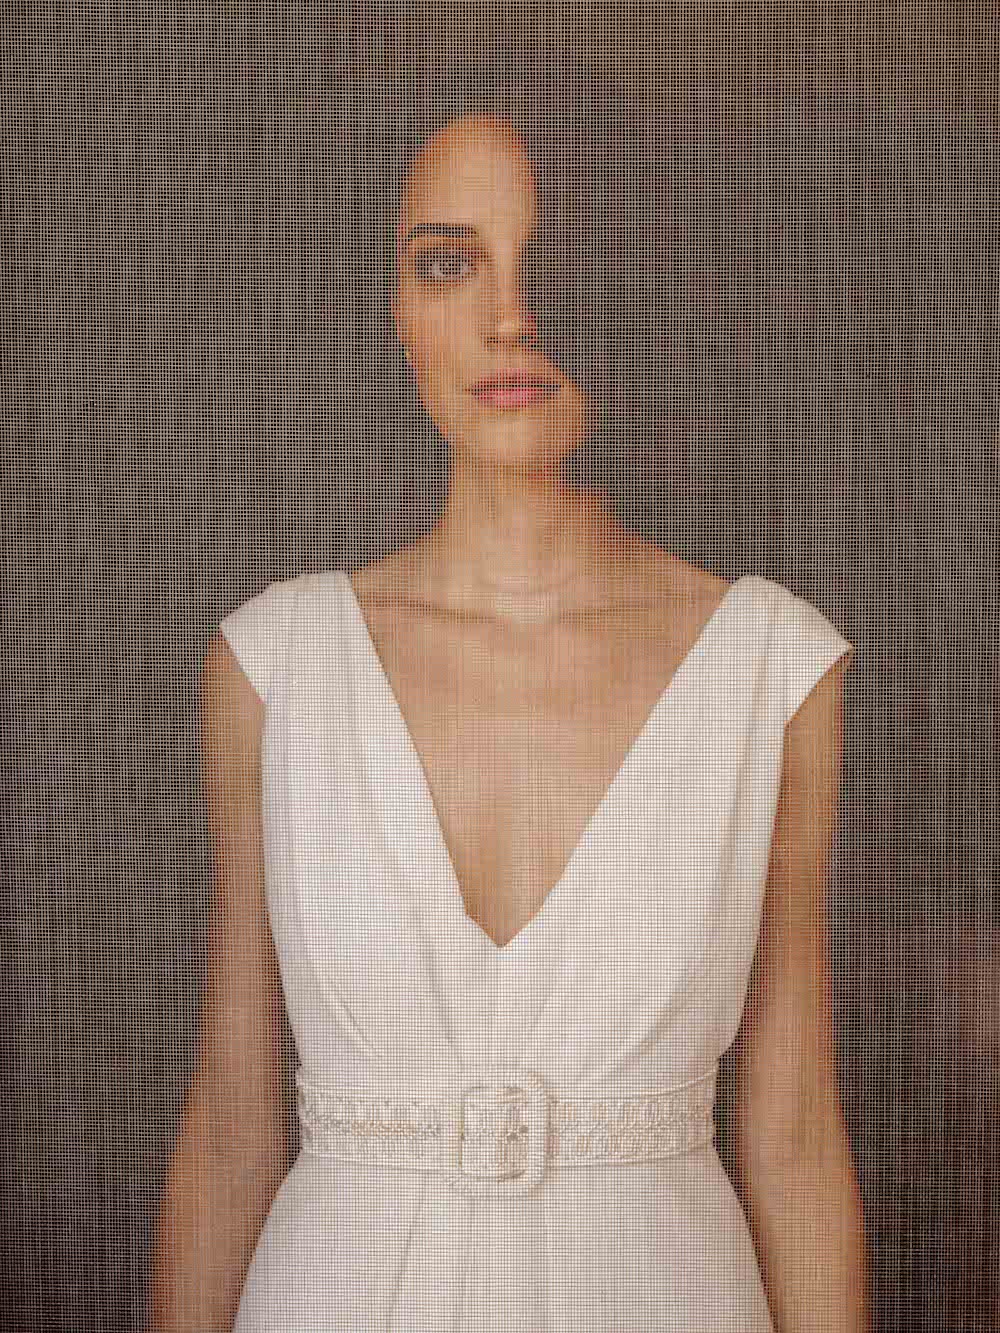 Céline de Monicault Collection 2021 - Robes de Mariée - Blog Mariage Madame C